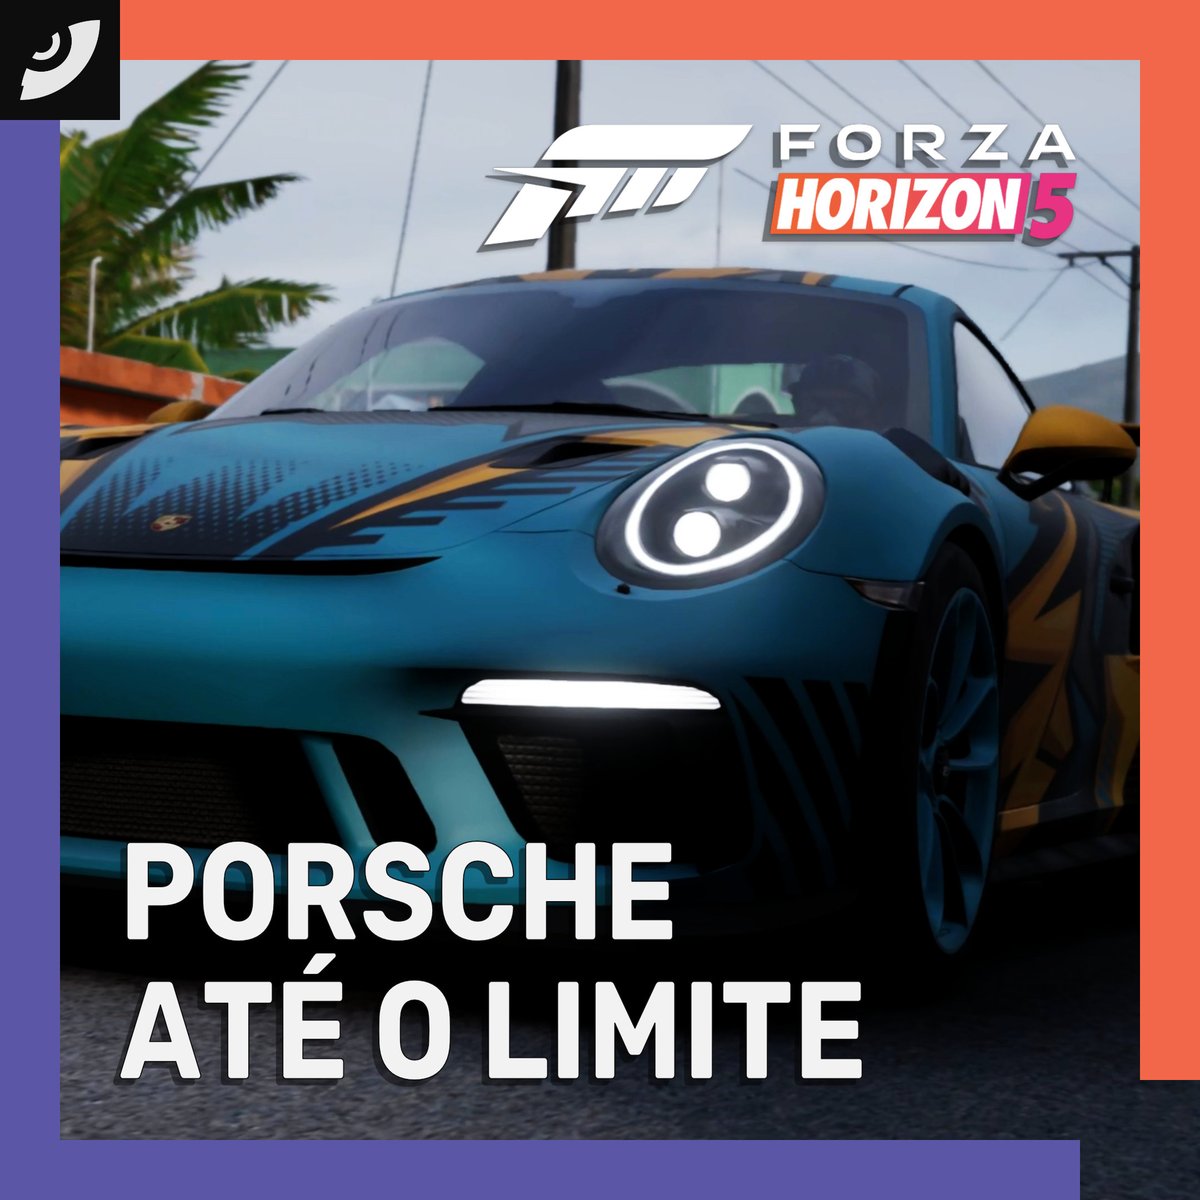 Salve, galera! Se liguem nesse rolê insano com o Porsche 911 GT3 RS 2019 no Forza Horizon 5. Preparados para a prova Porsche Até o Limite com só os melhores Porsches de pista? Segura essa emoção e bora pro play!  Link no perfil. #MurucutuGames #ForzaHorizon5 #ApexAllstars